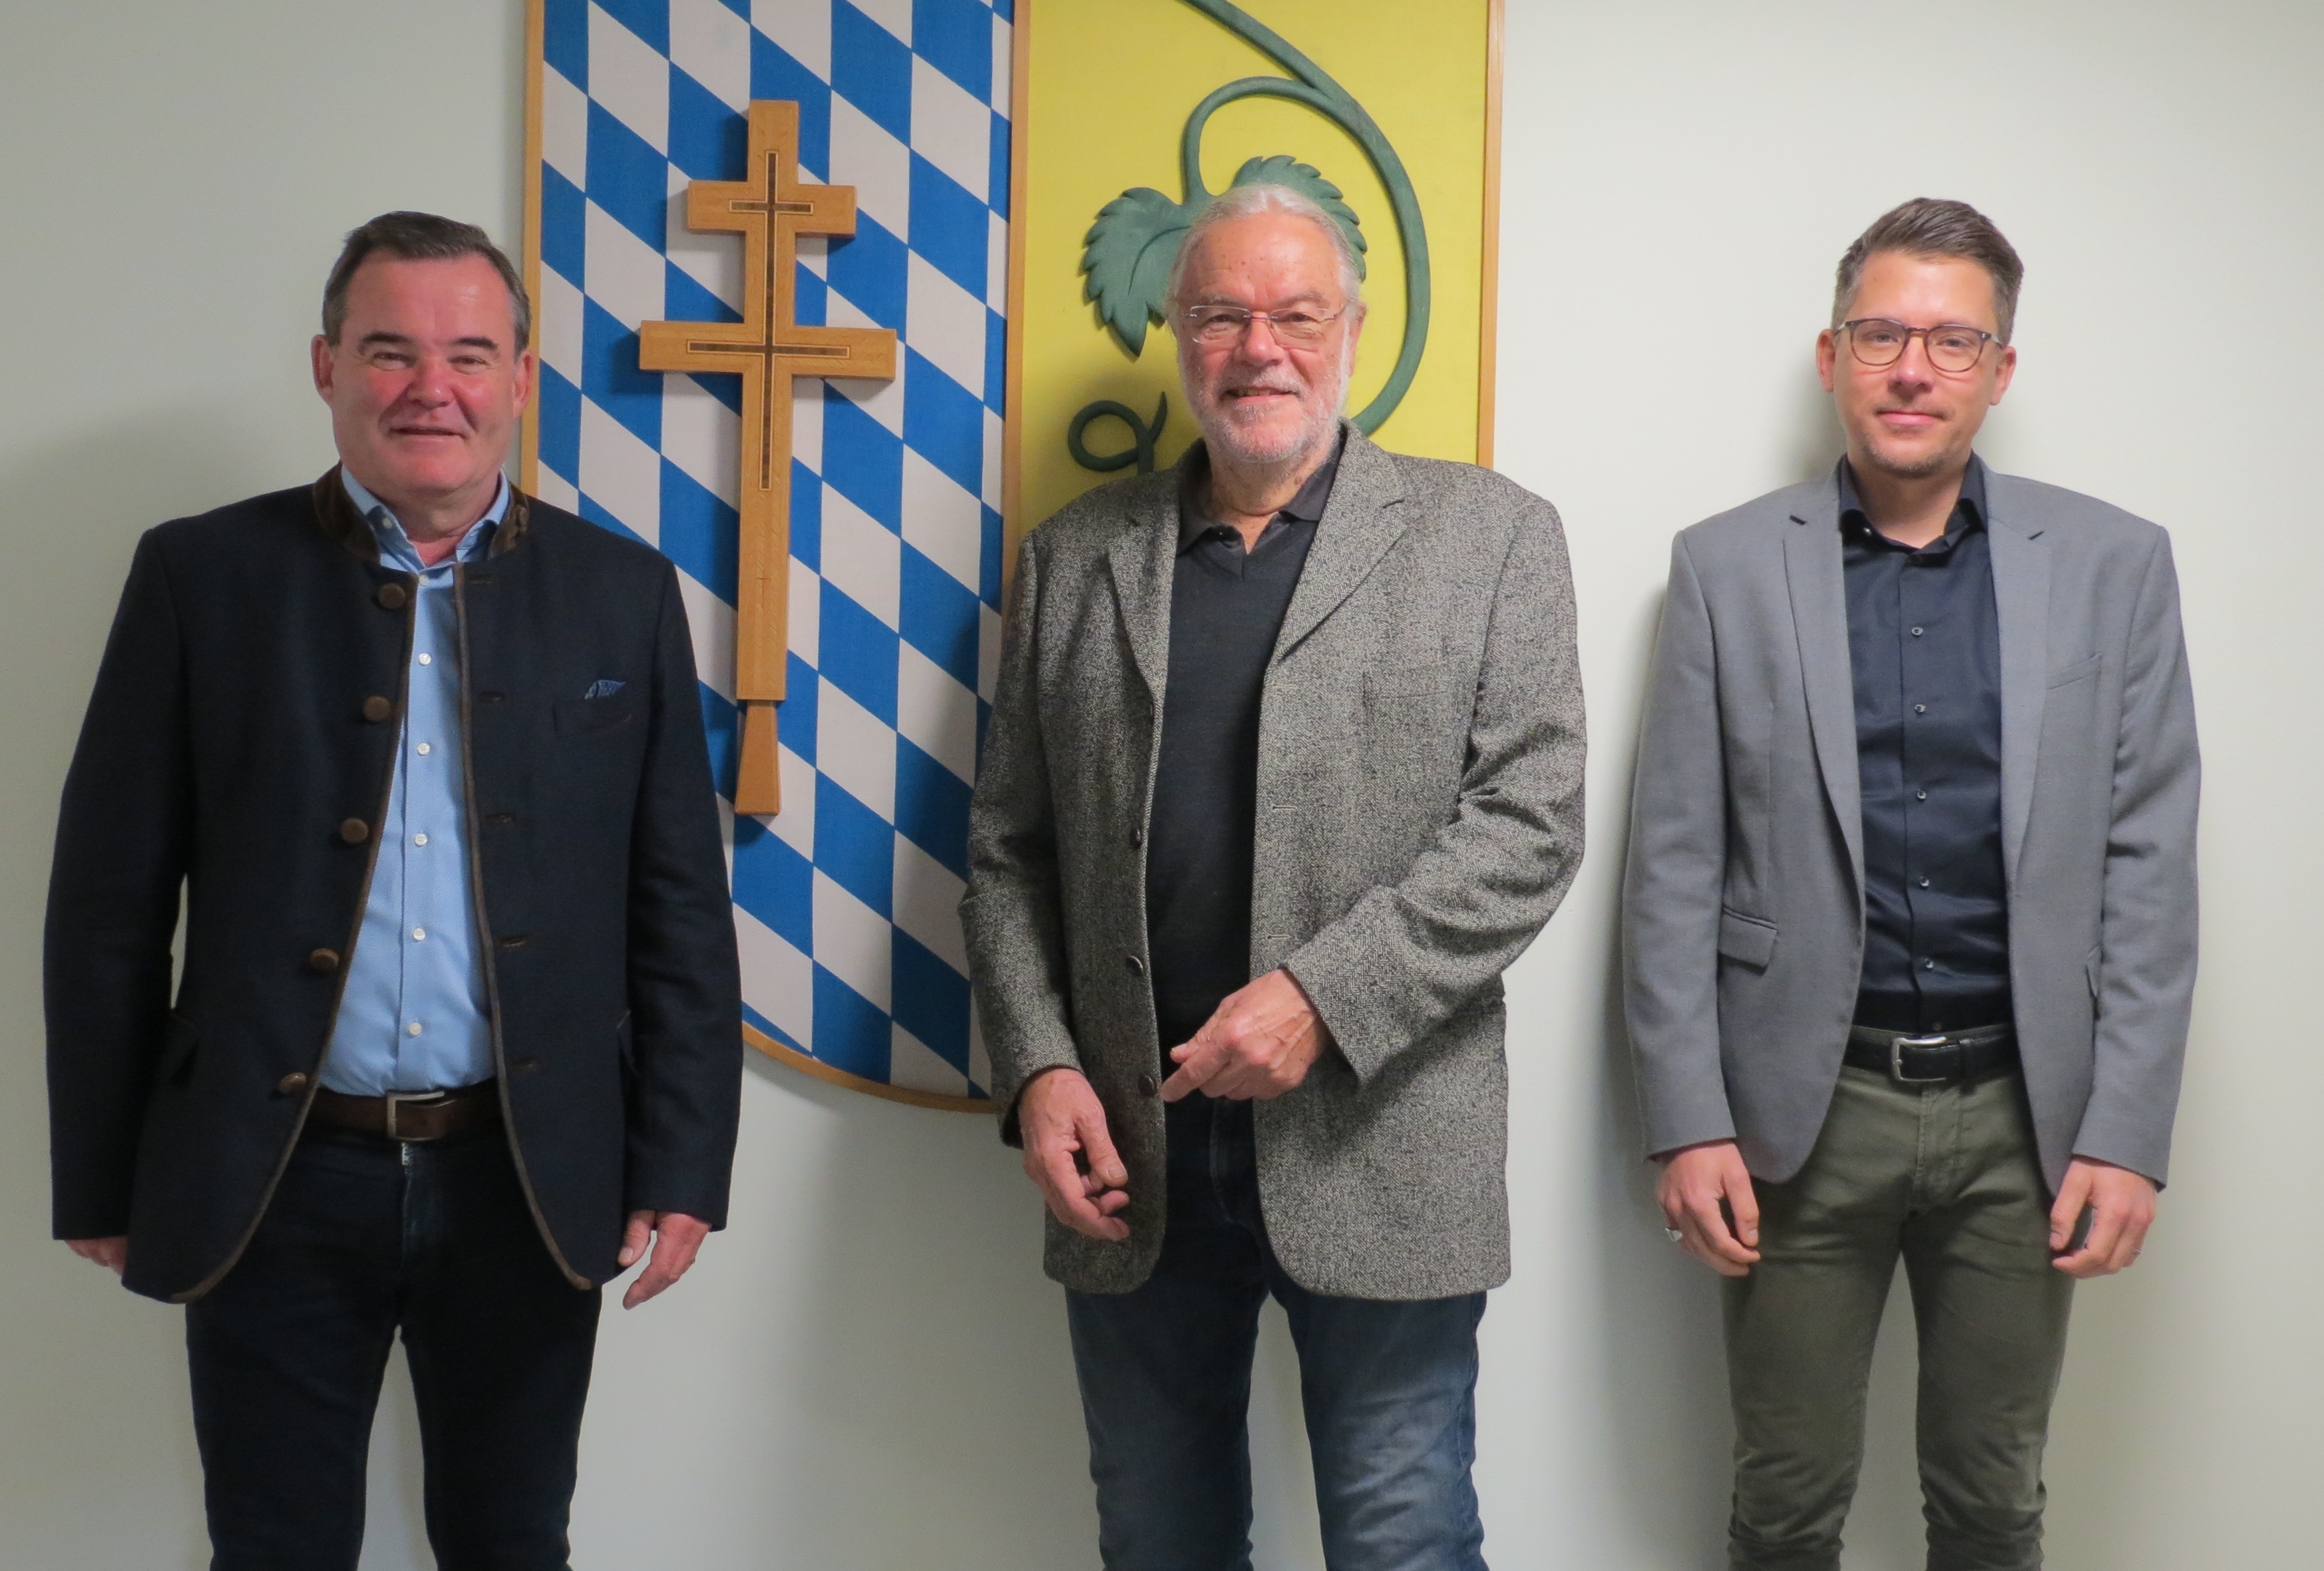 v.l.n.r.: Landrat Gürtner, Bergmann und Beckmann